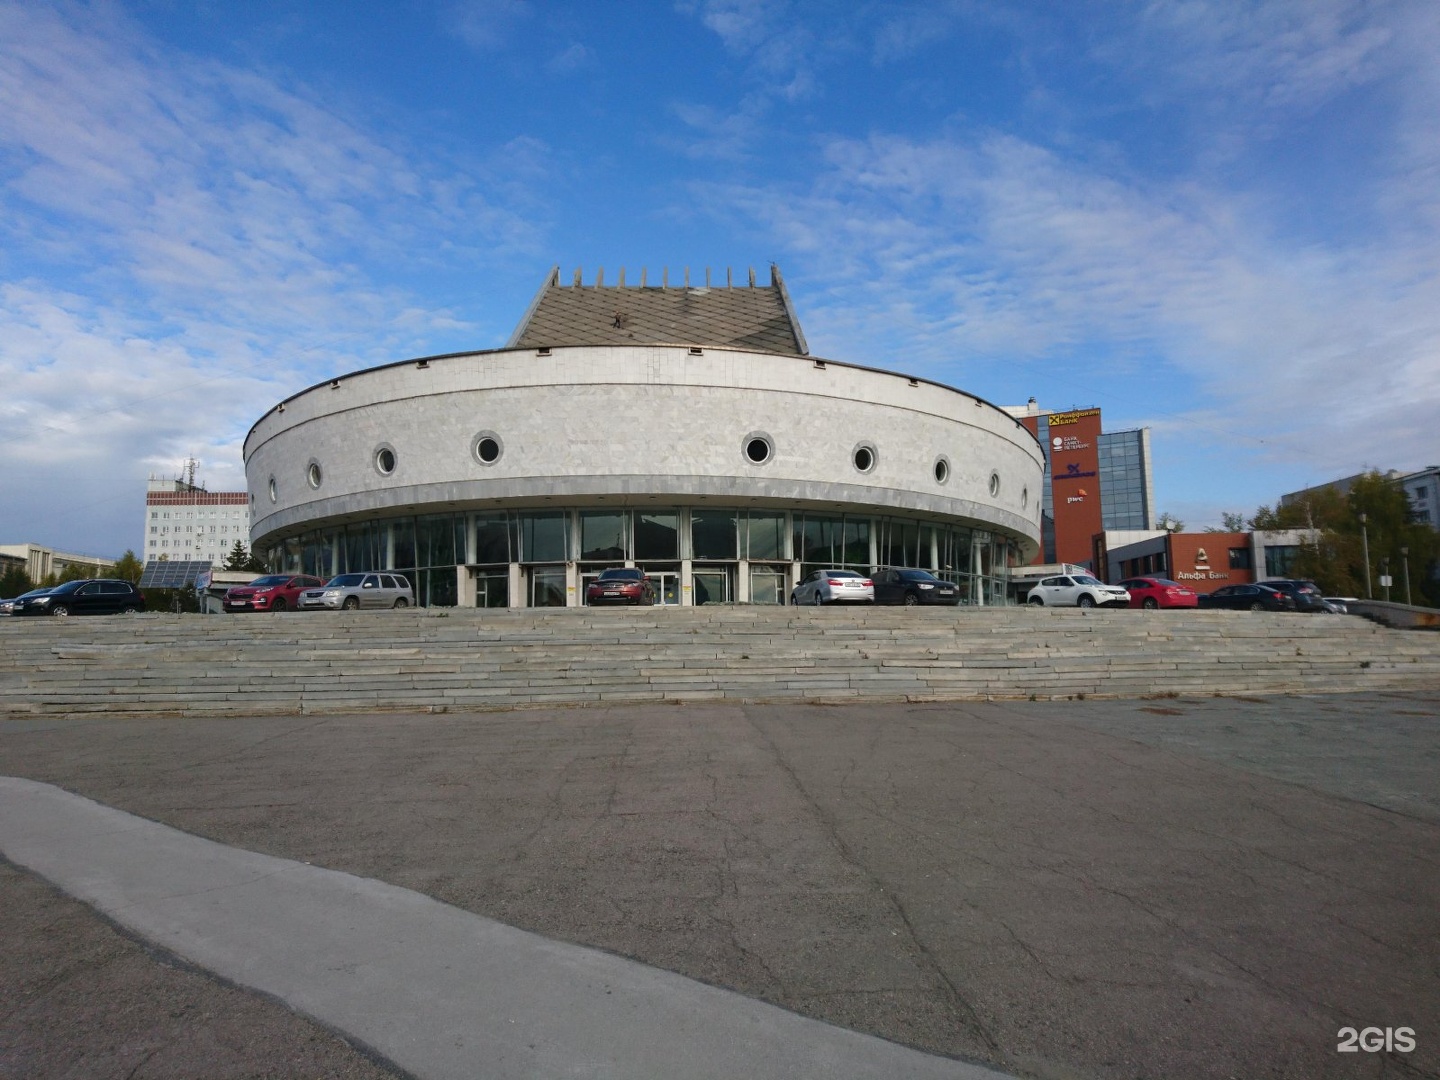 глобус новосибирский академический молодежный театр